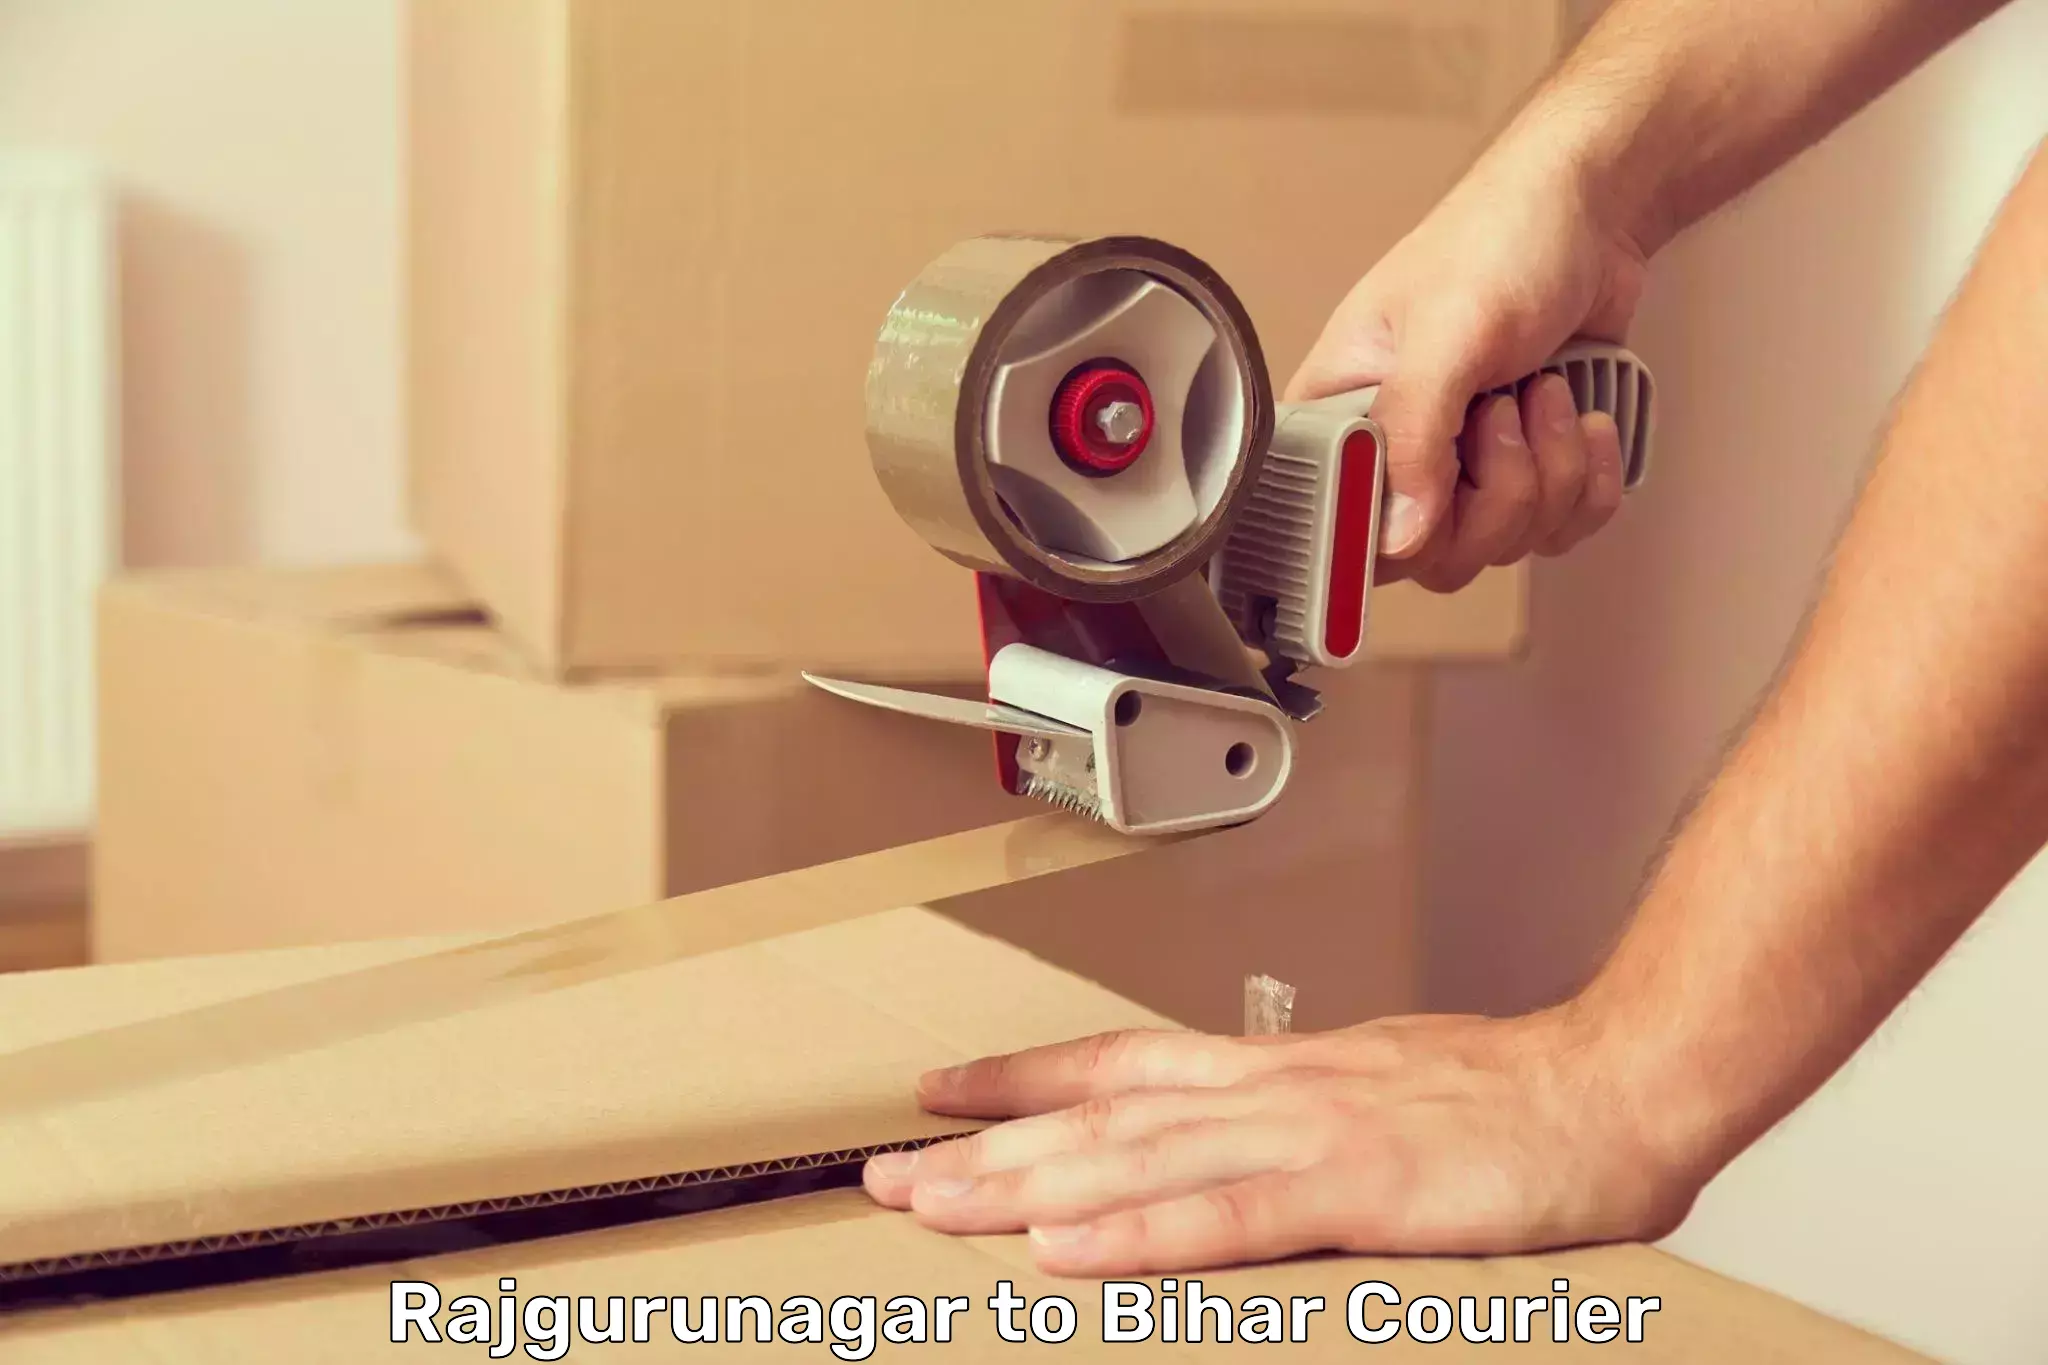 Professional courier handling Rajgurunagar to Bhagalpur